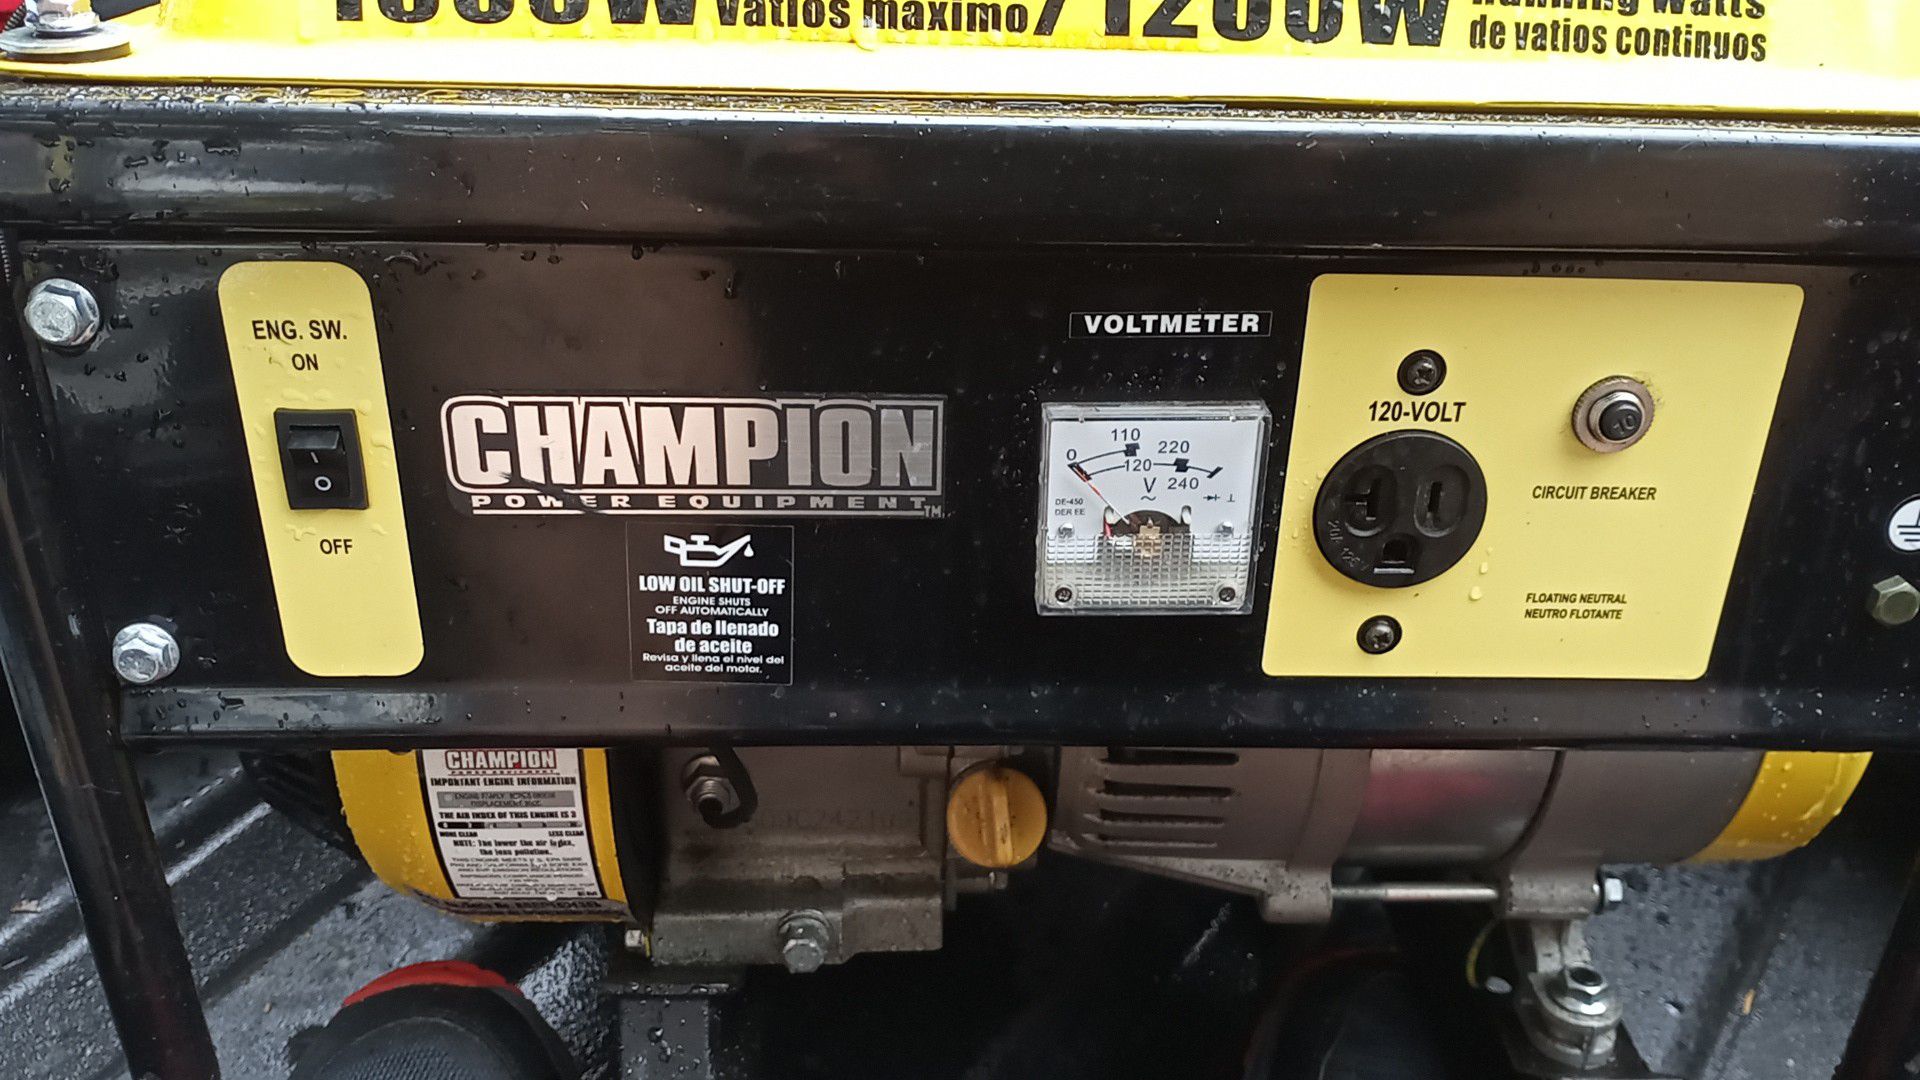 ChampionPowerEquiptment 1500watt/1200running watt power generator barley used.